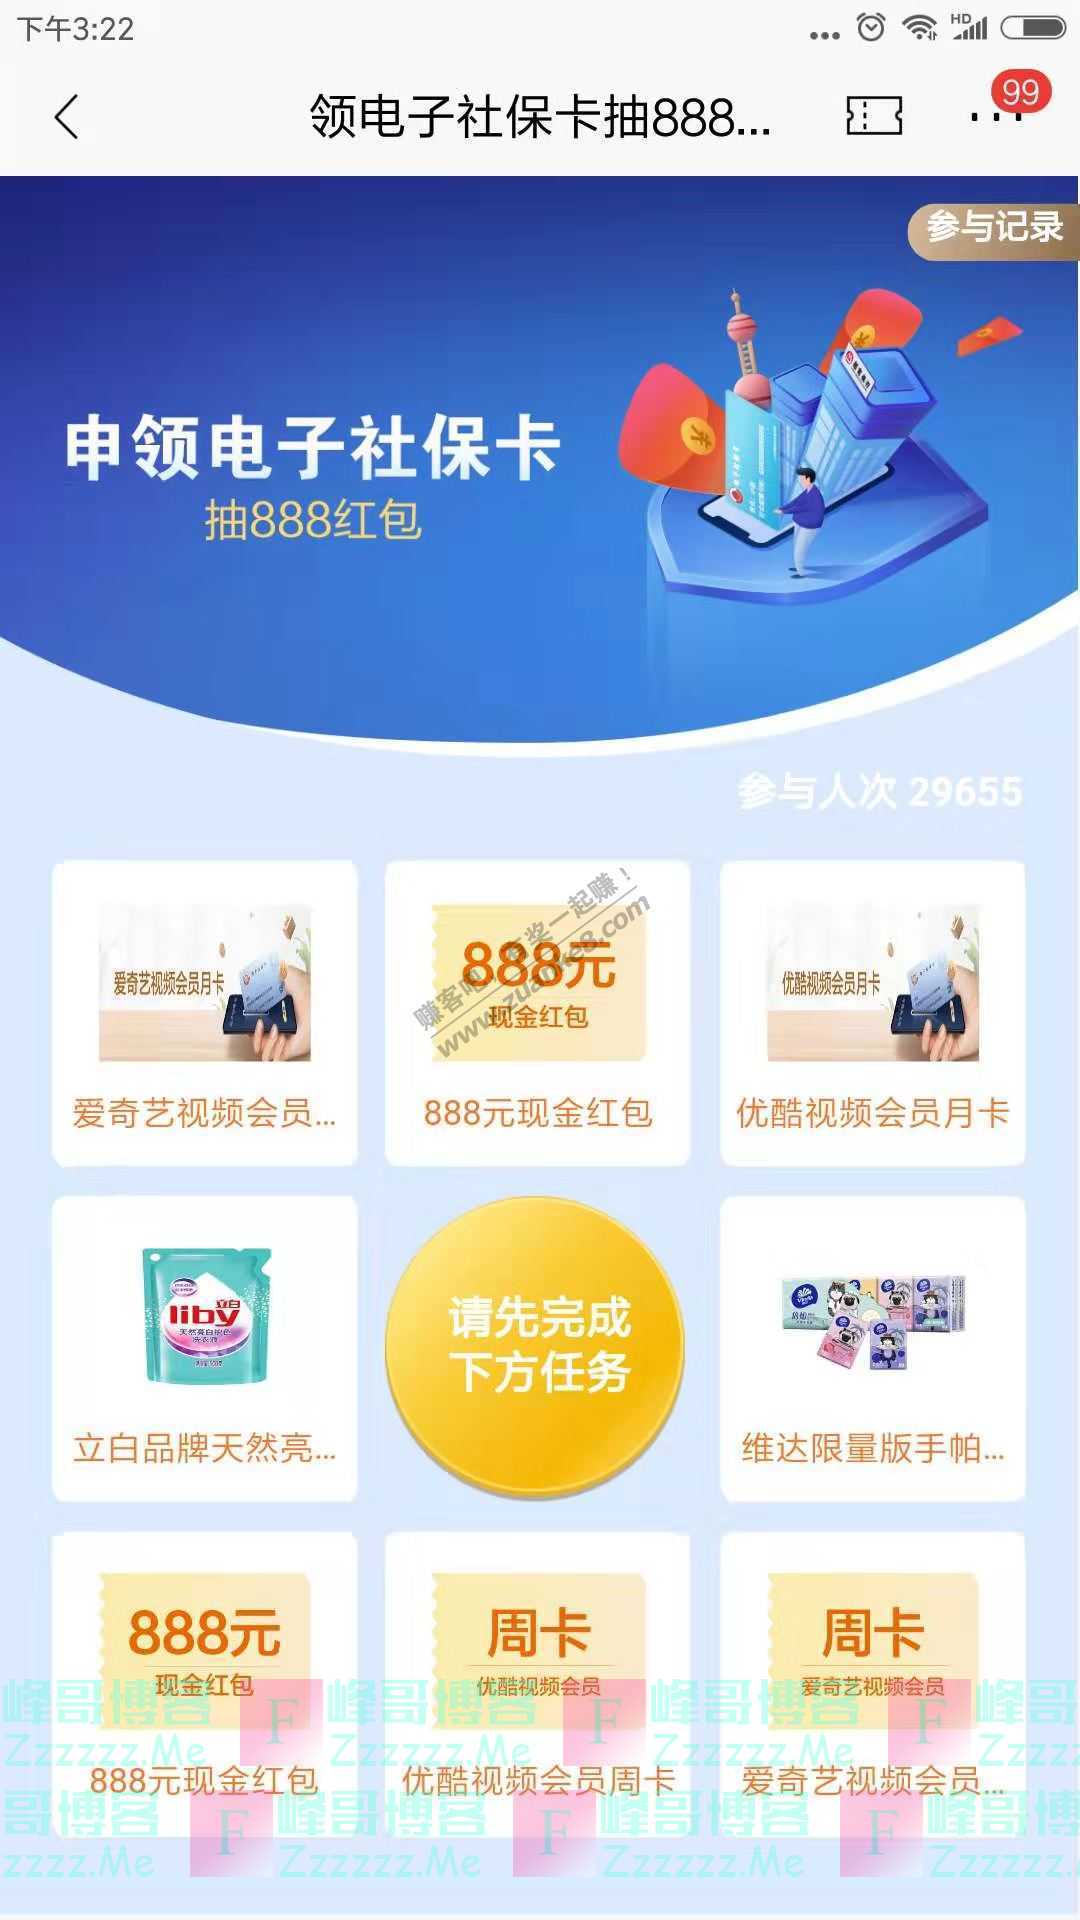 招商银行app领电子社保卡抽888红包（截止1月31日）